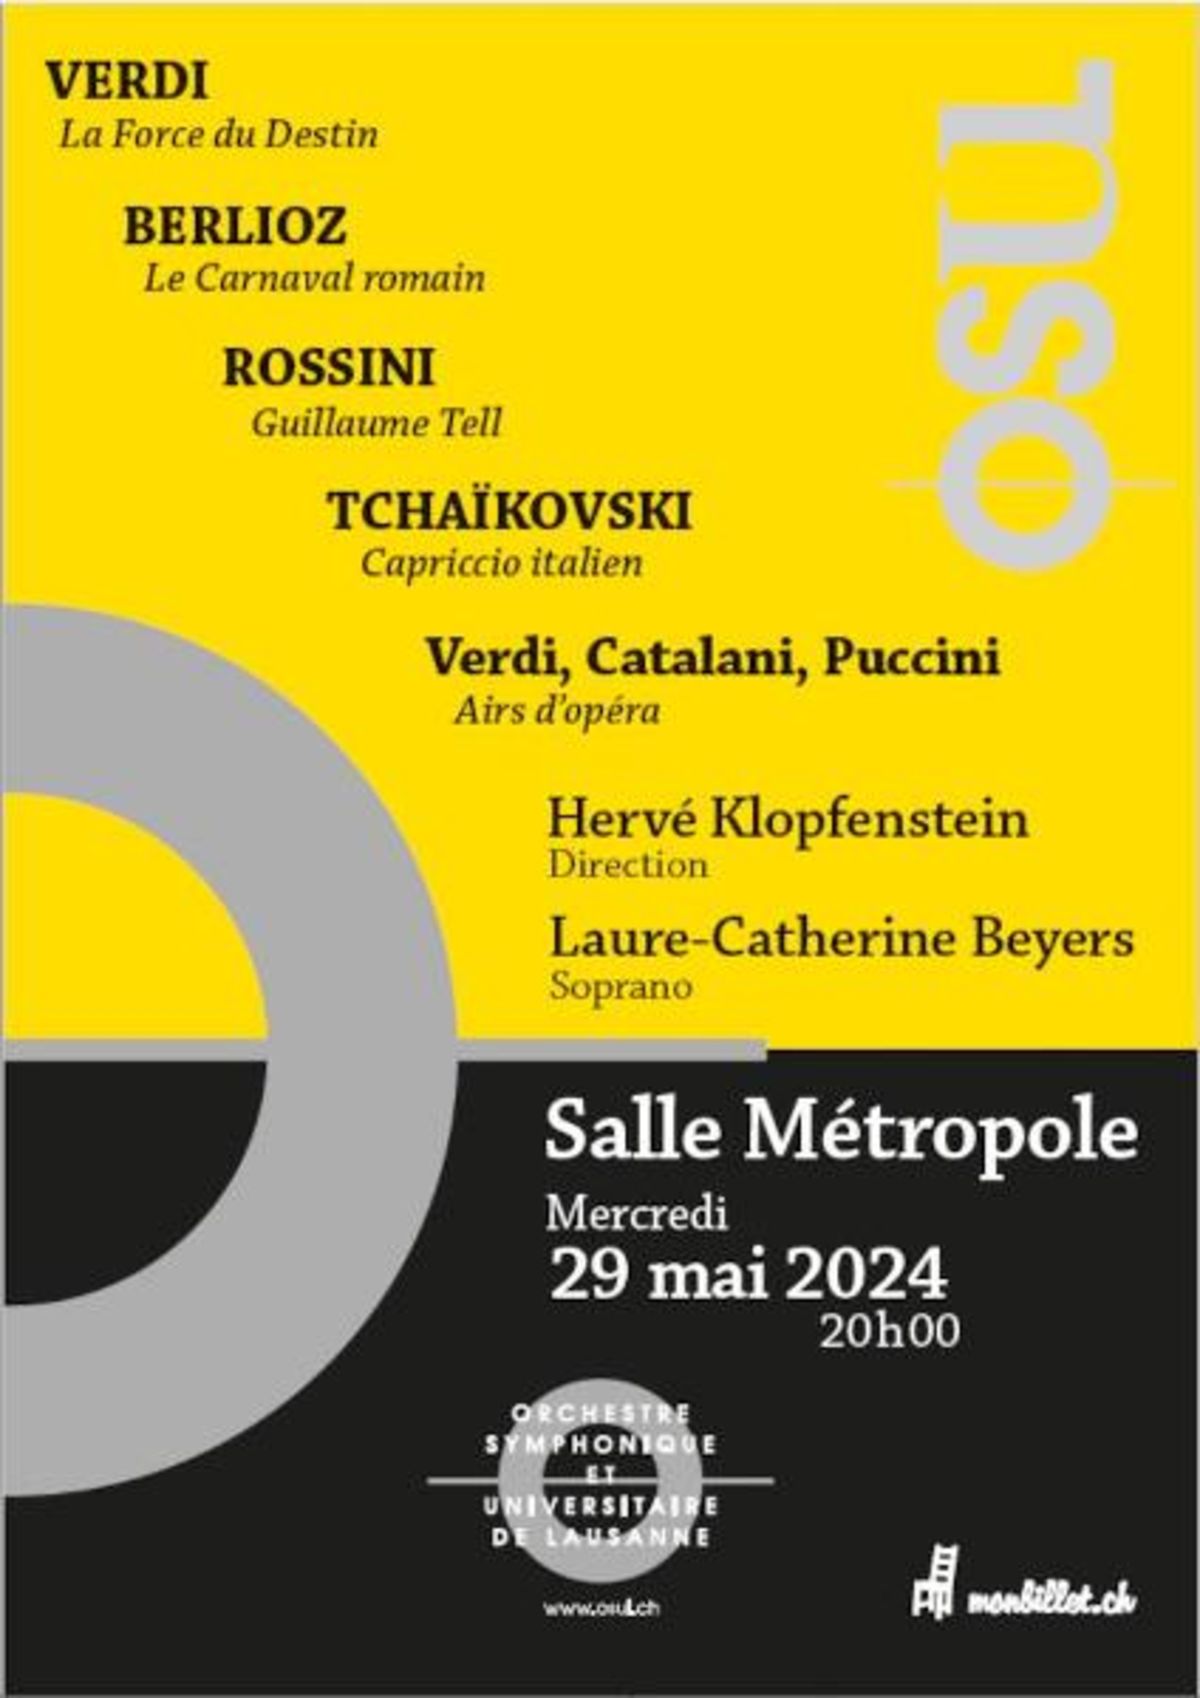 Orchestre Symphonique et Universitaire de Lausanne